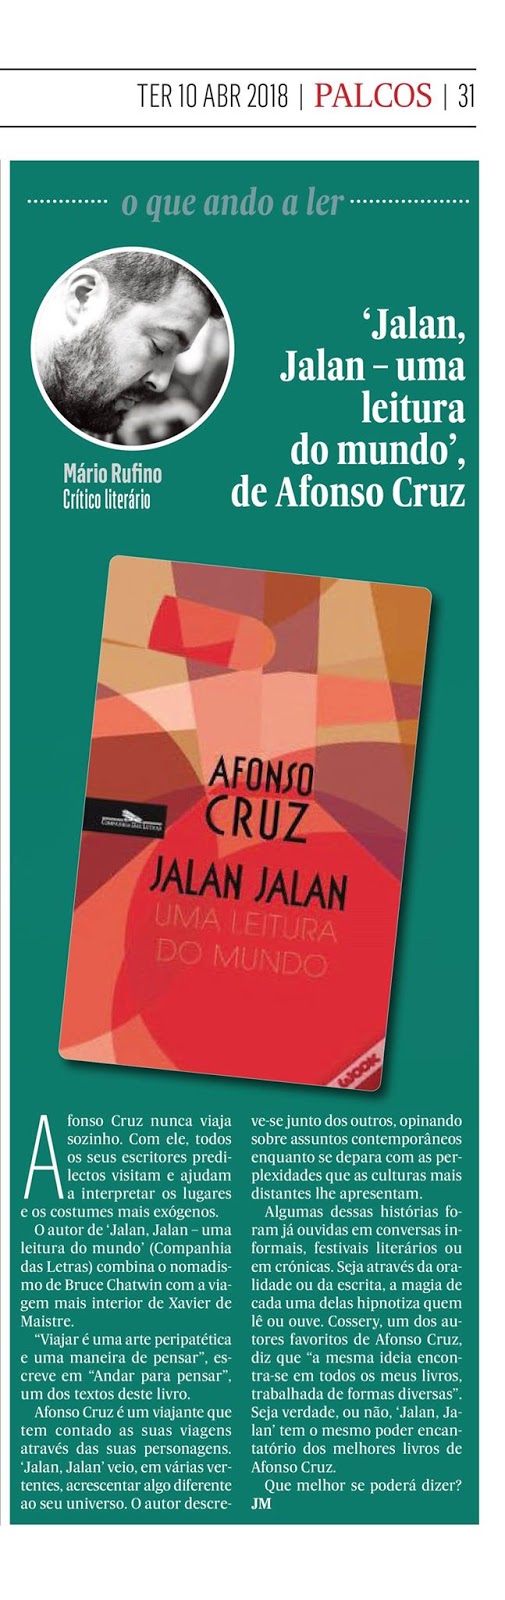 Jalan Jalan - Uma Leitura do Mundo by Afonso Cruz